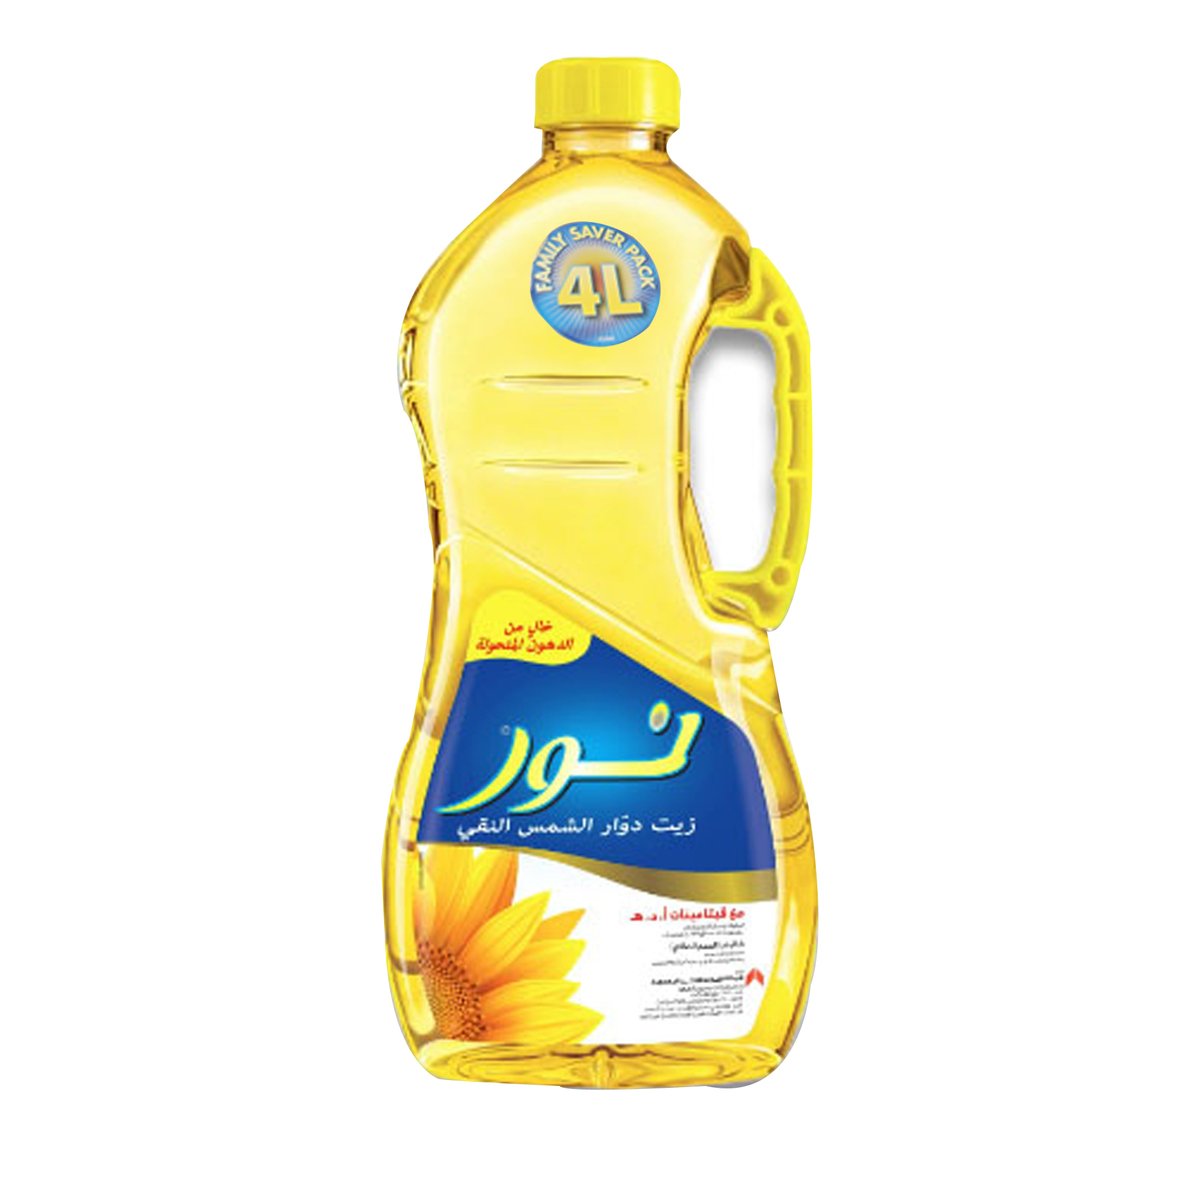 Noor Sunflower Oil 4Litre